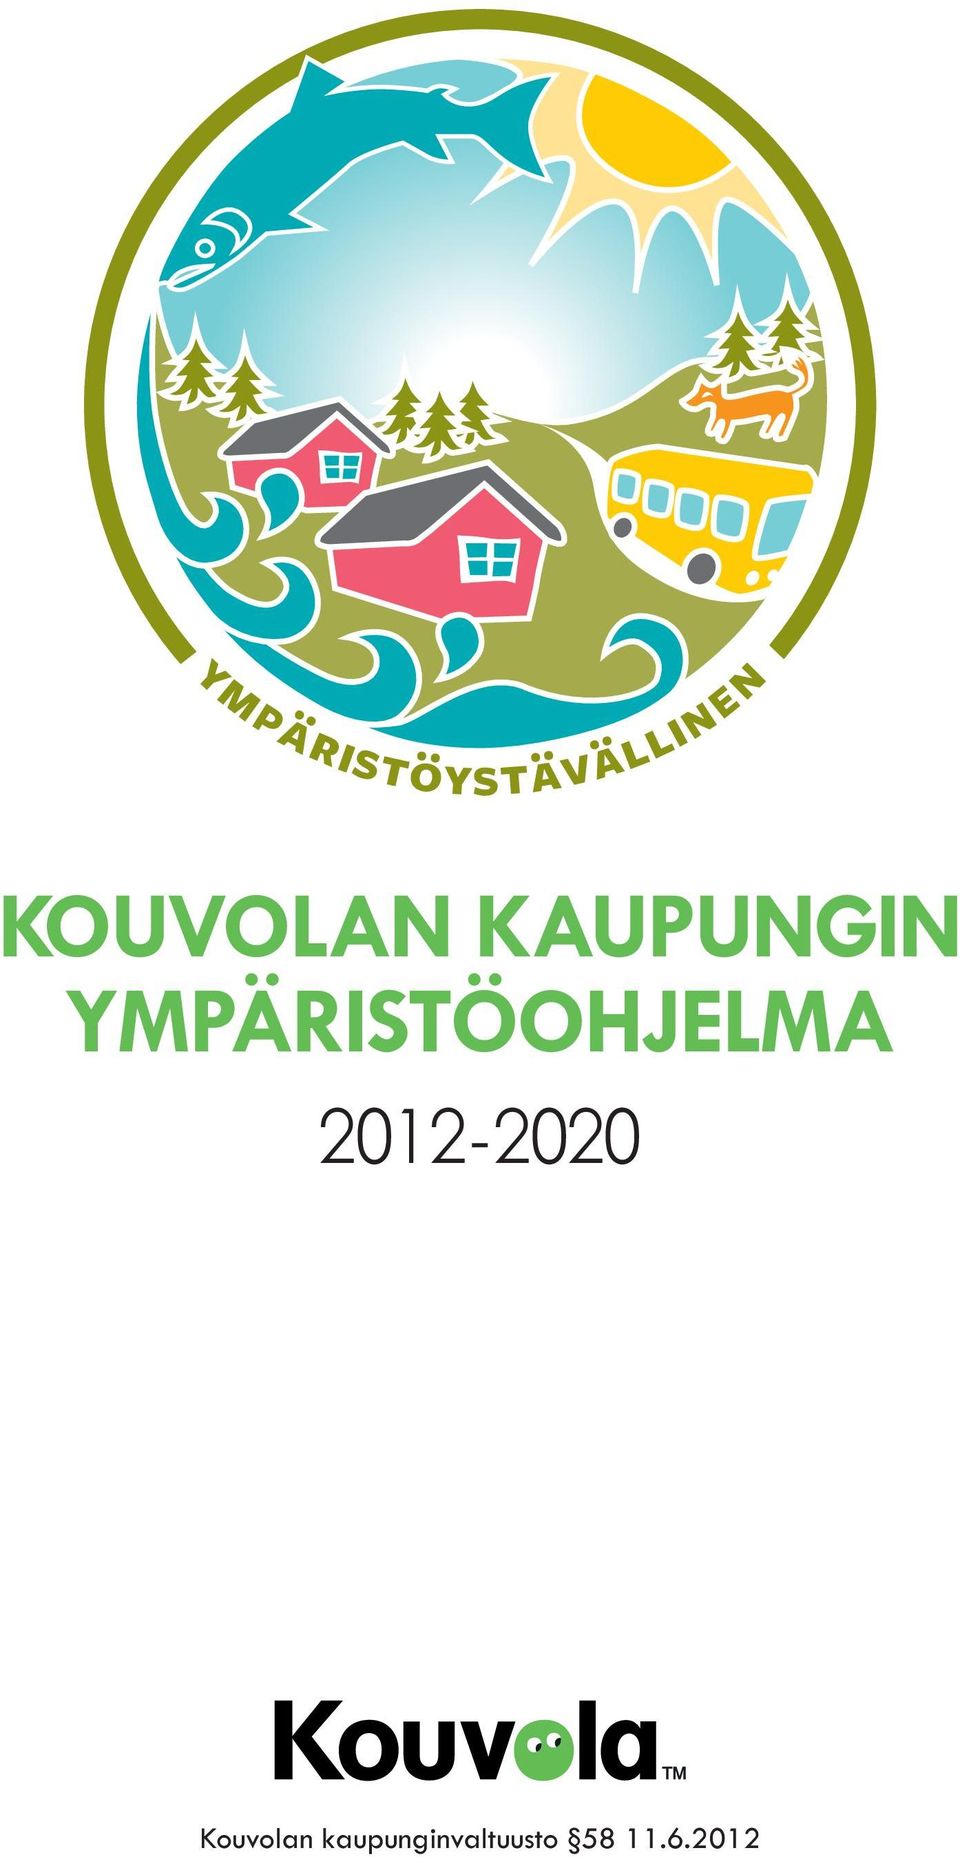 YMPÄRISTÖOHJELMA 2012-2020